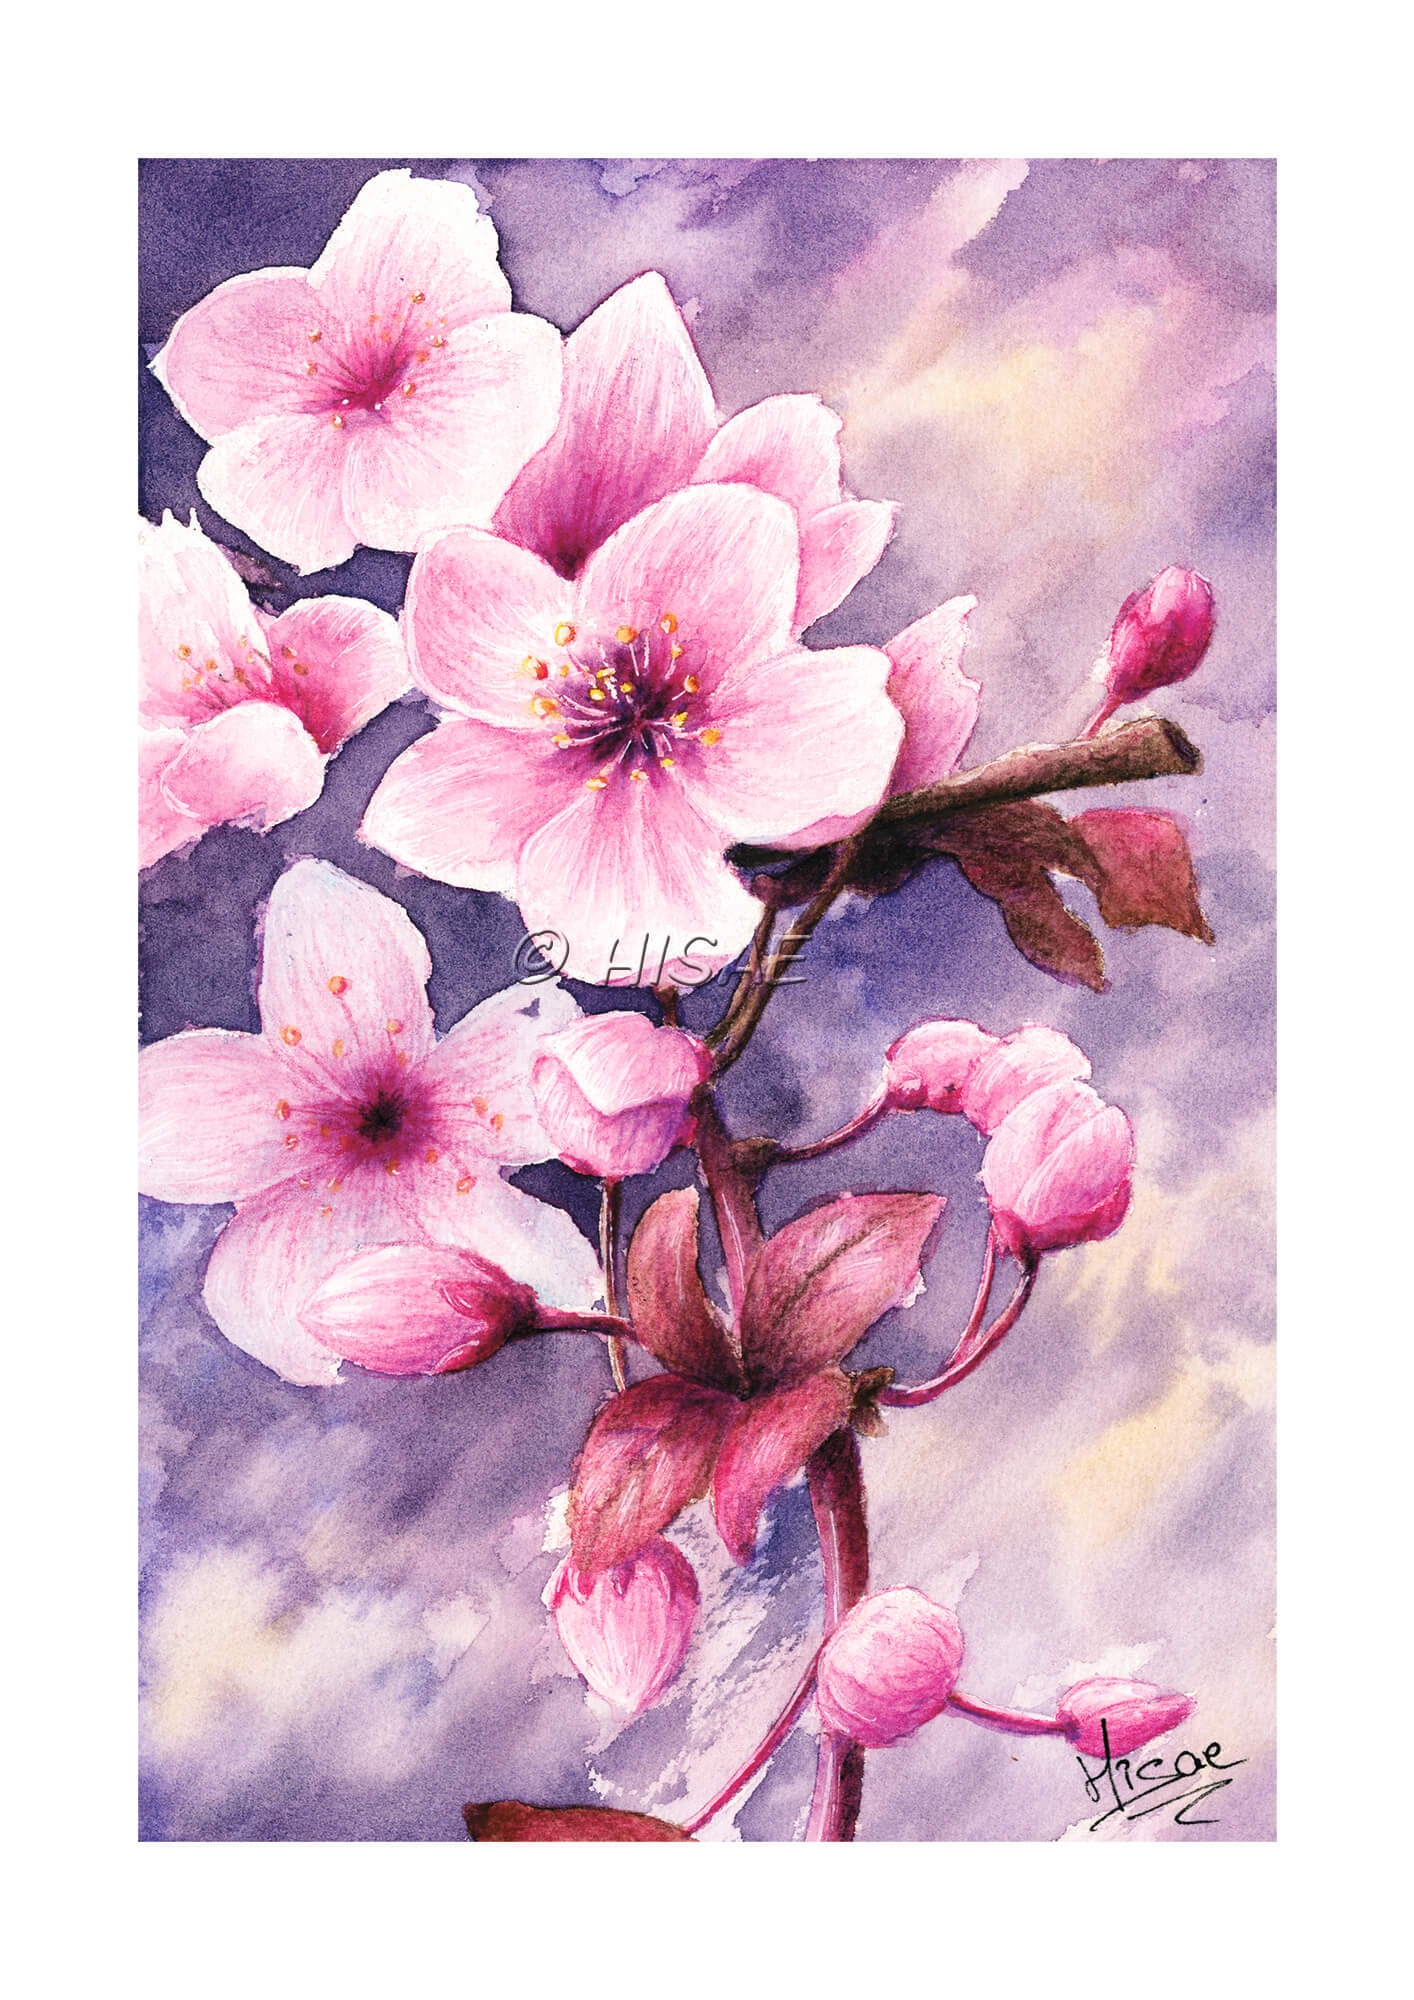 Dessin à l'aquarelle représentant une branche de cerisier japonais et ses fleurs @Hisae illustrations